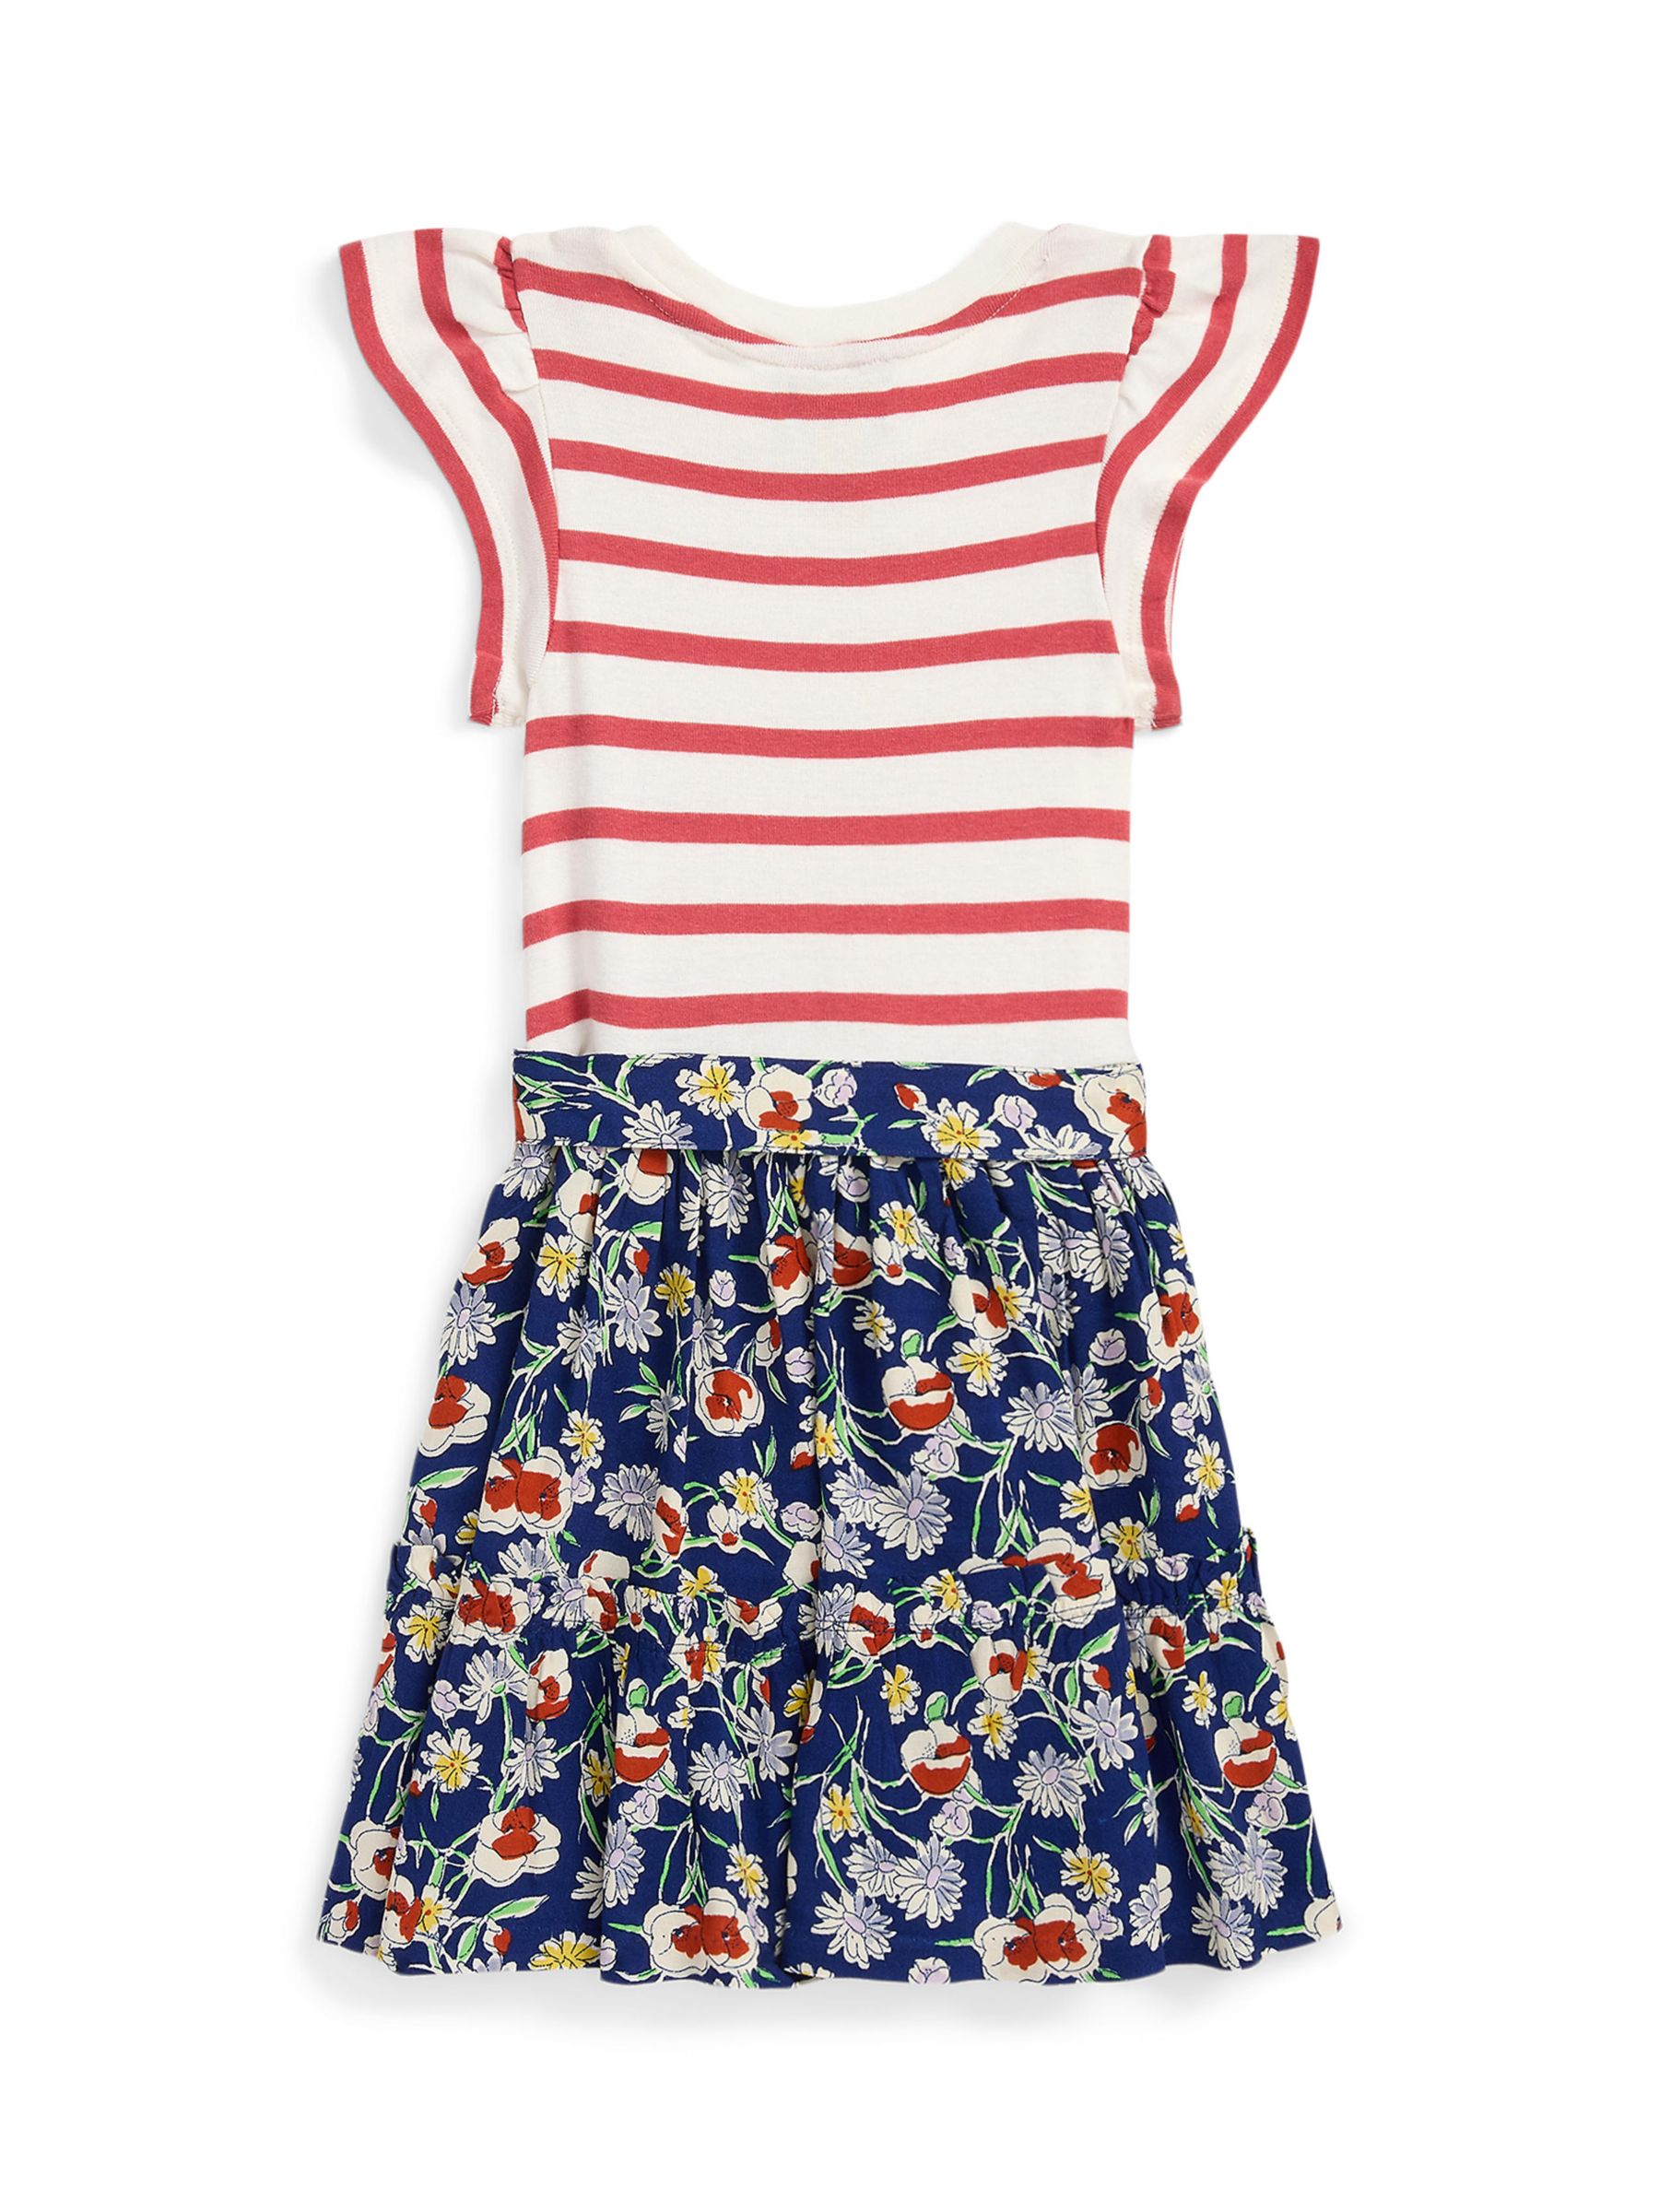 Ralph Lauren Kids' Stripe & Floral Print Day Dress, Nantree Deck White, 3 years